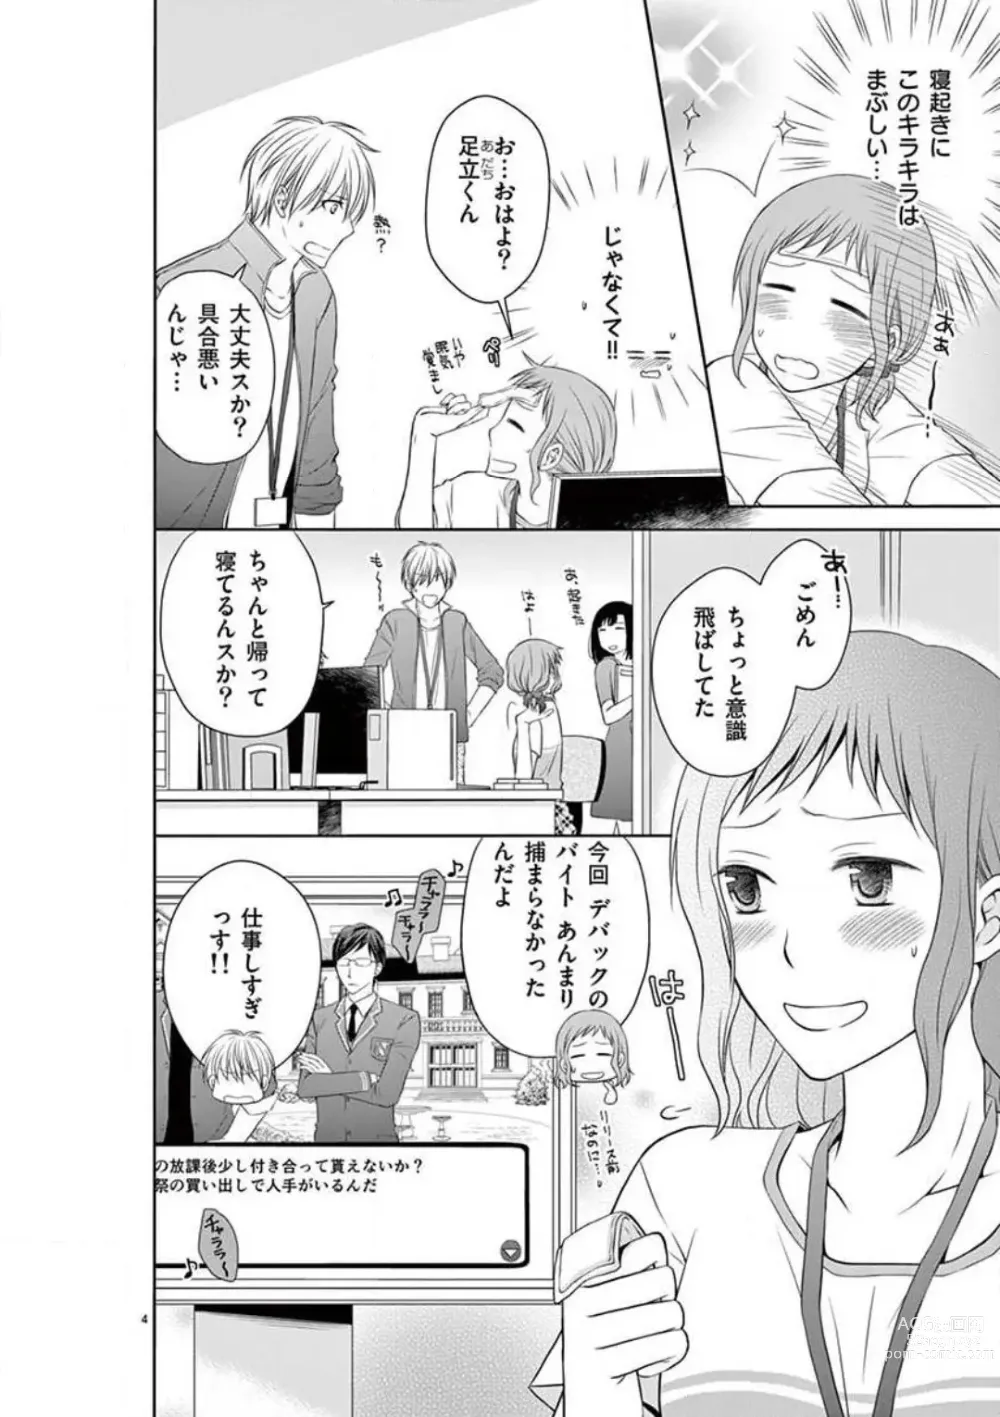 Page 4 of manga Senpai Gentei no Kedamonodesukara 〜 Kanshō-yō Ikemen no Hotobashiru Aijō〜 1-4